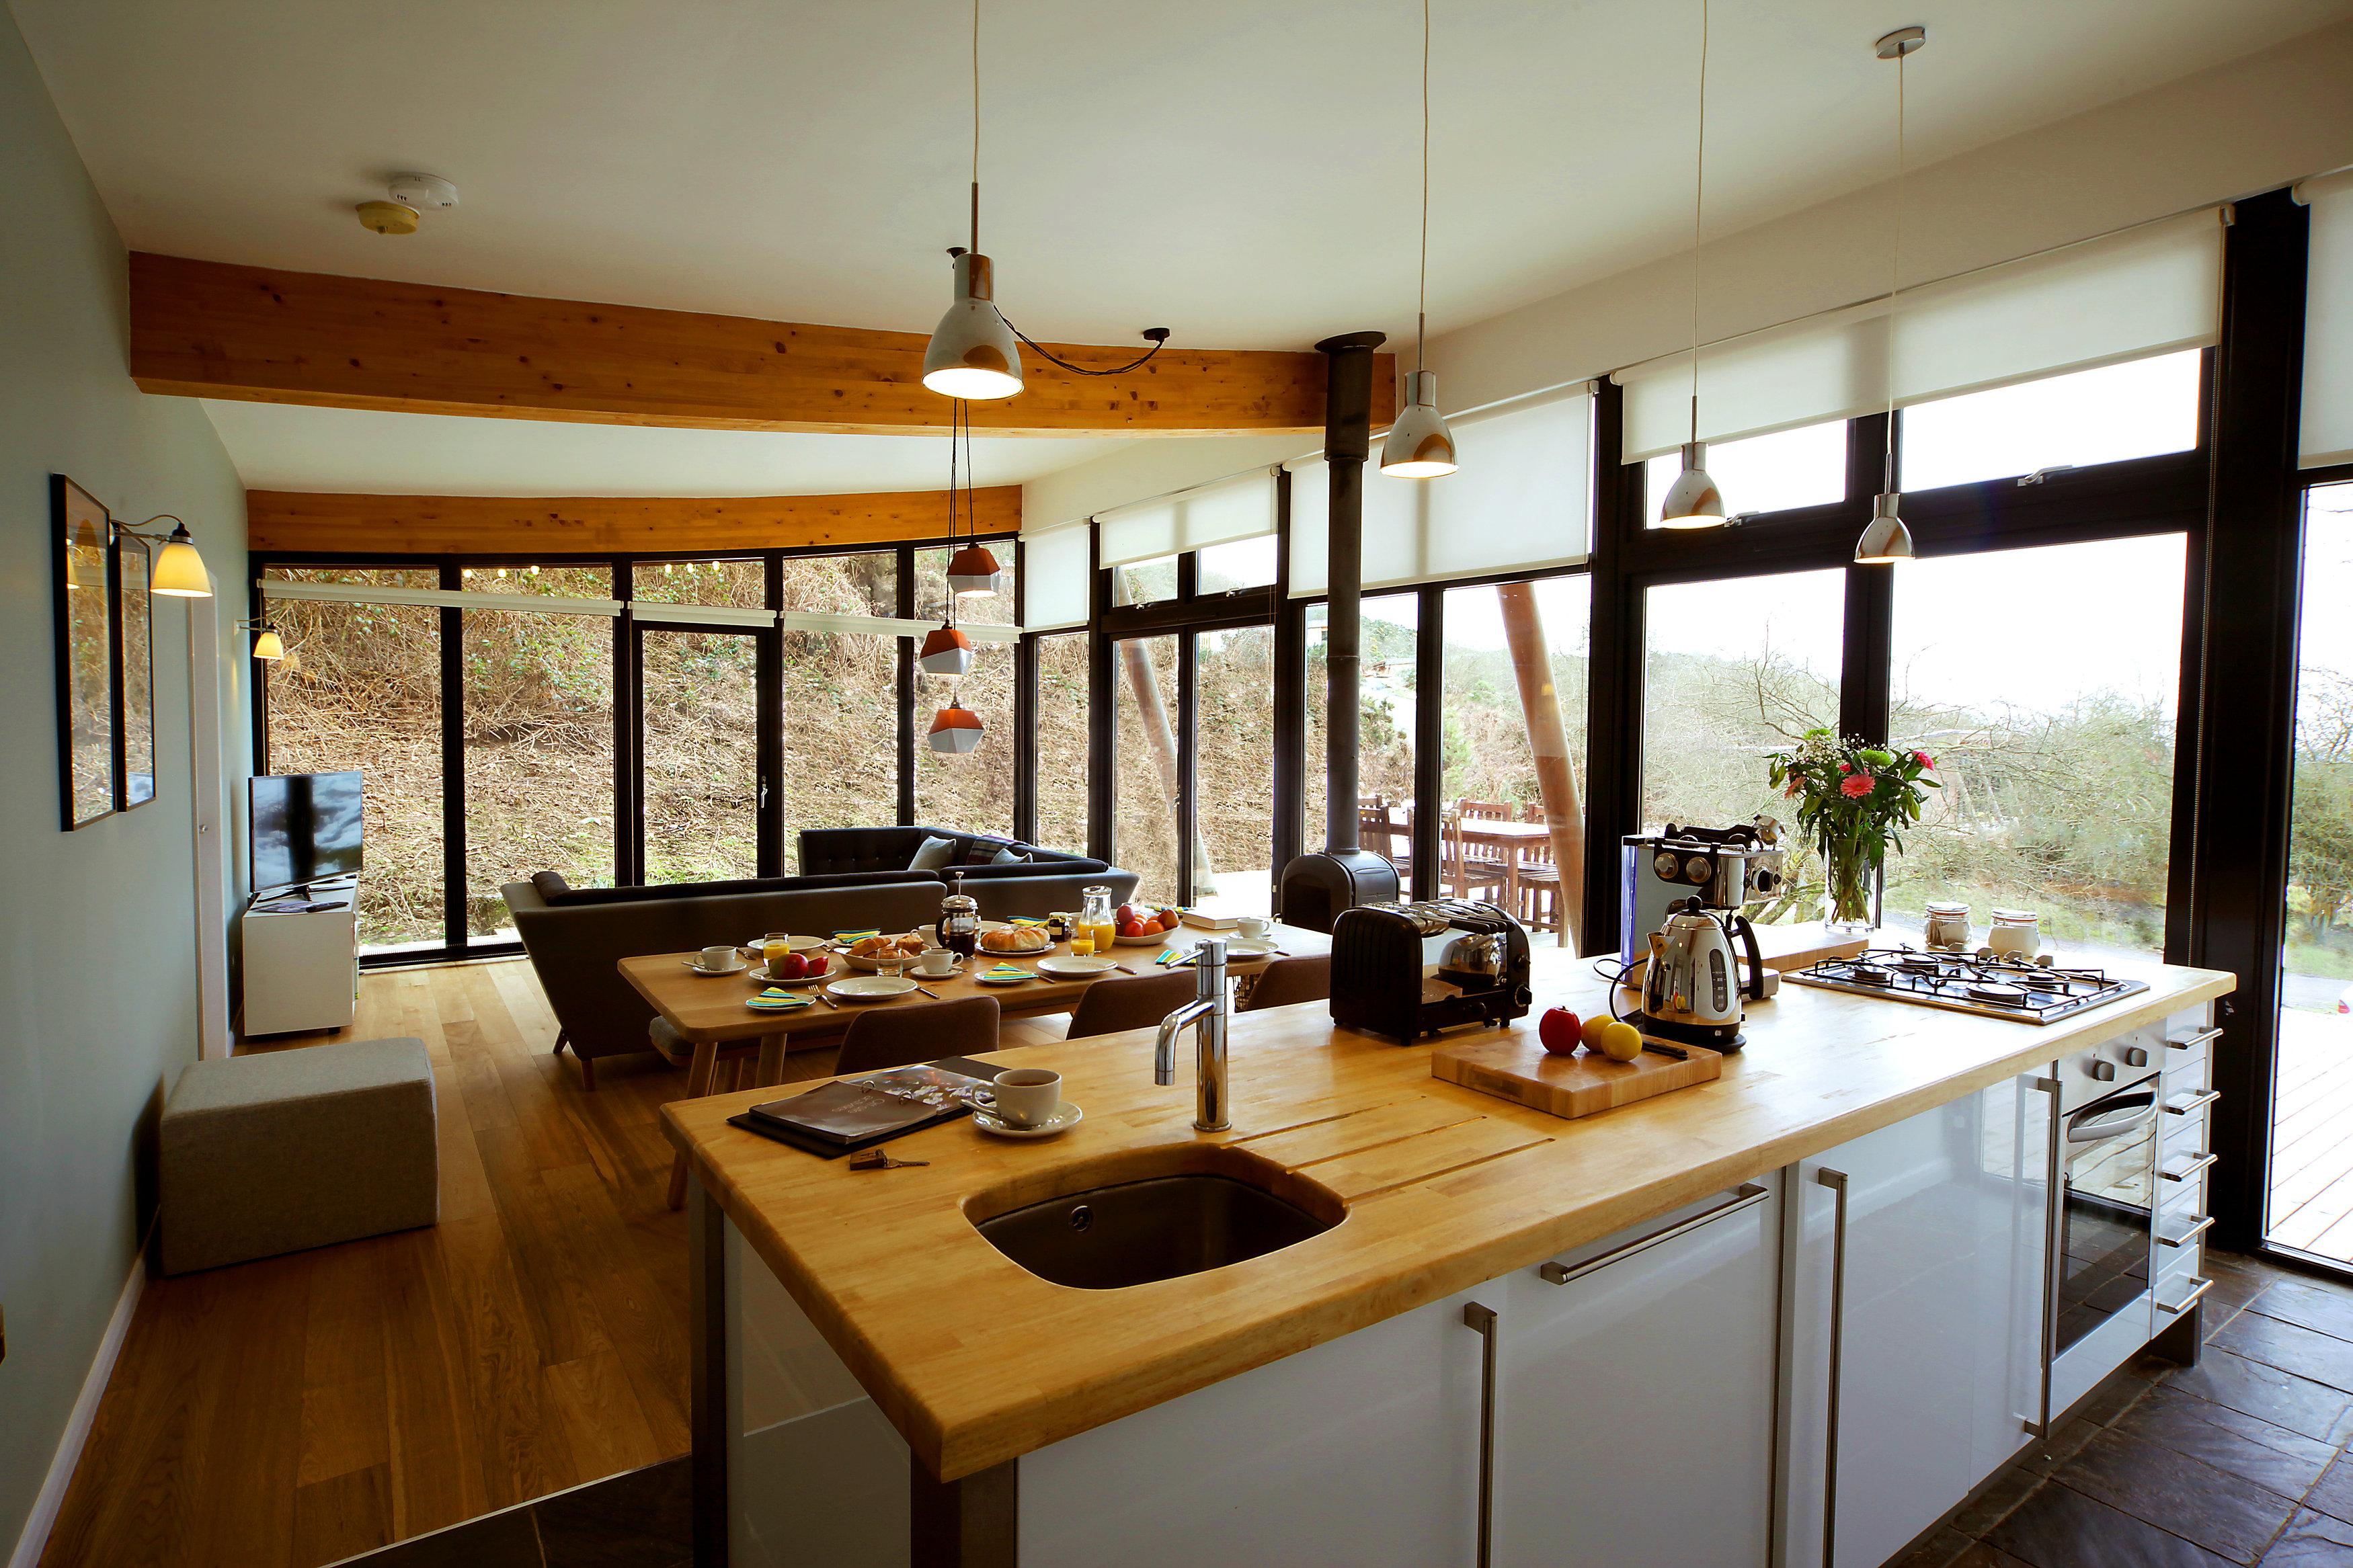 Wohnküche mit Holzarbeitsplatte #fensterfront #wohnküche #arbeitsplatte #wohnzimmer #esstisch #dachbalken #pendelleuchte #deckenbalken #sofa #hausgestaltung ©Another Country